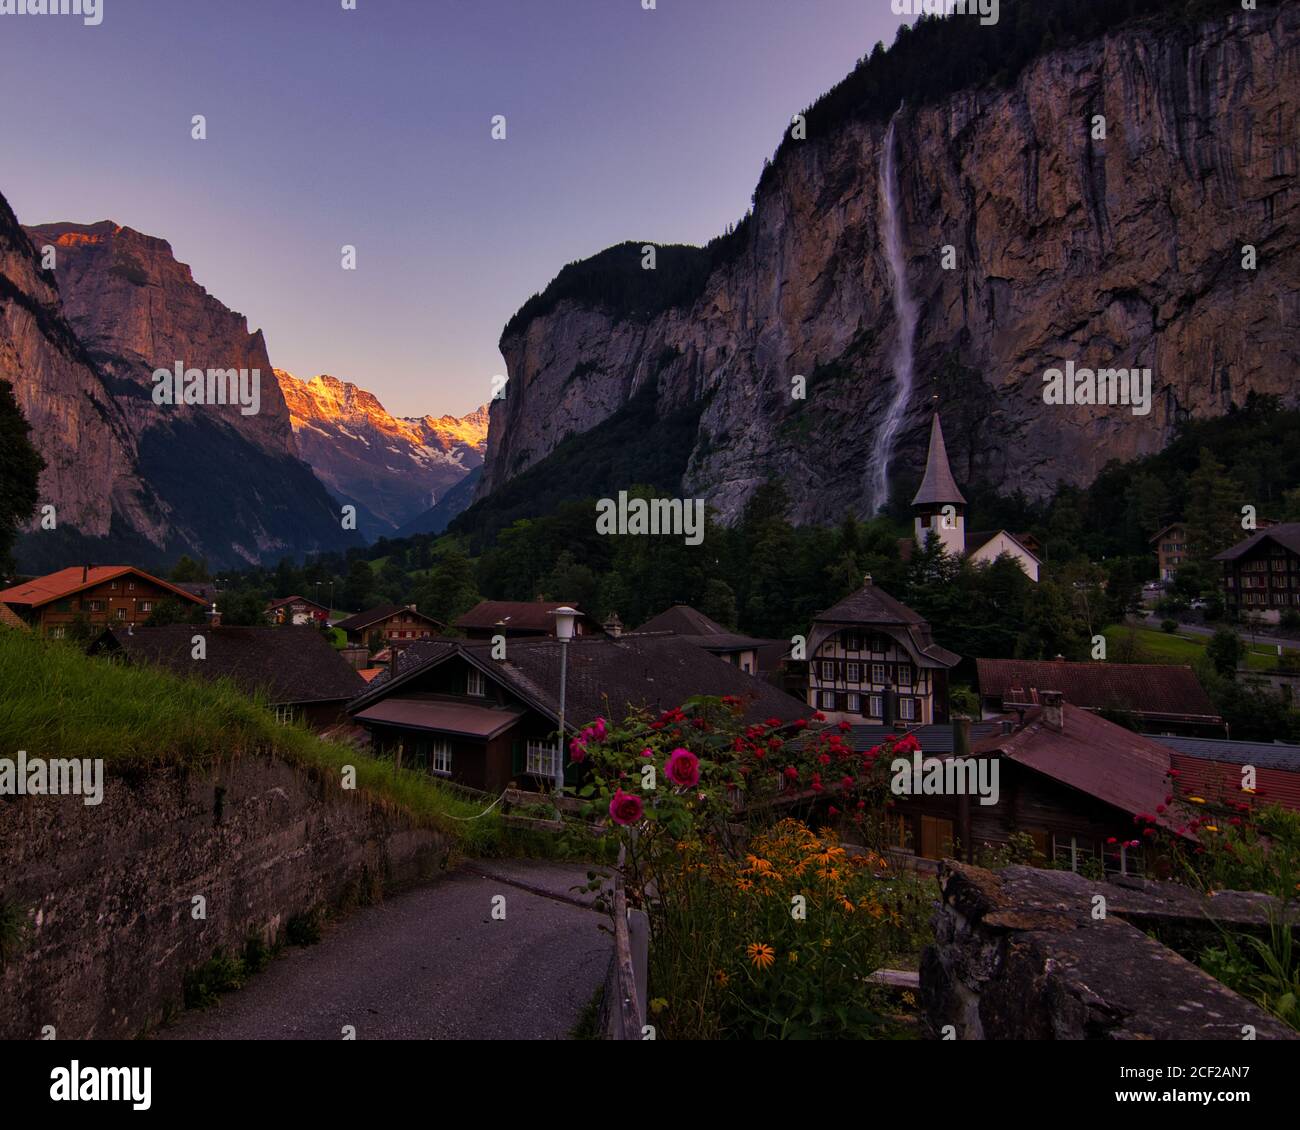 Lauterbrunnen, einer der schönsten Orte in der Schweiz. Authentisches Reisefoto für das Reiseziel. Stockfoto